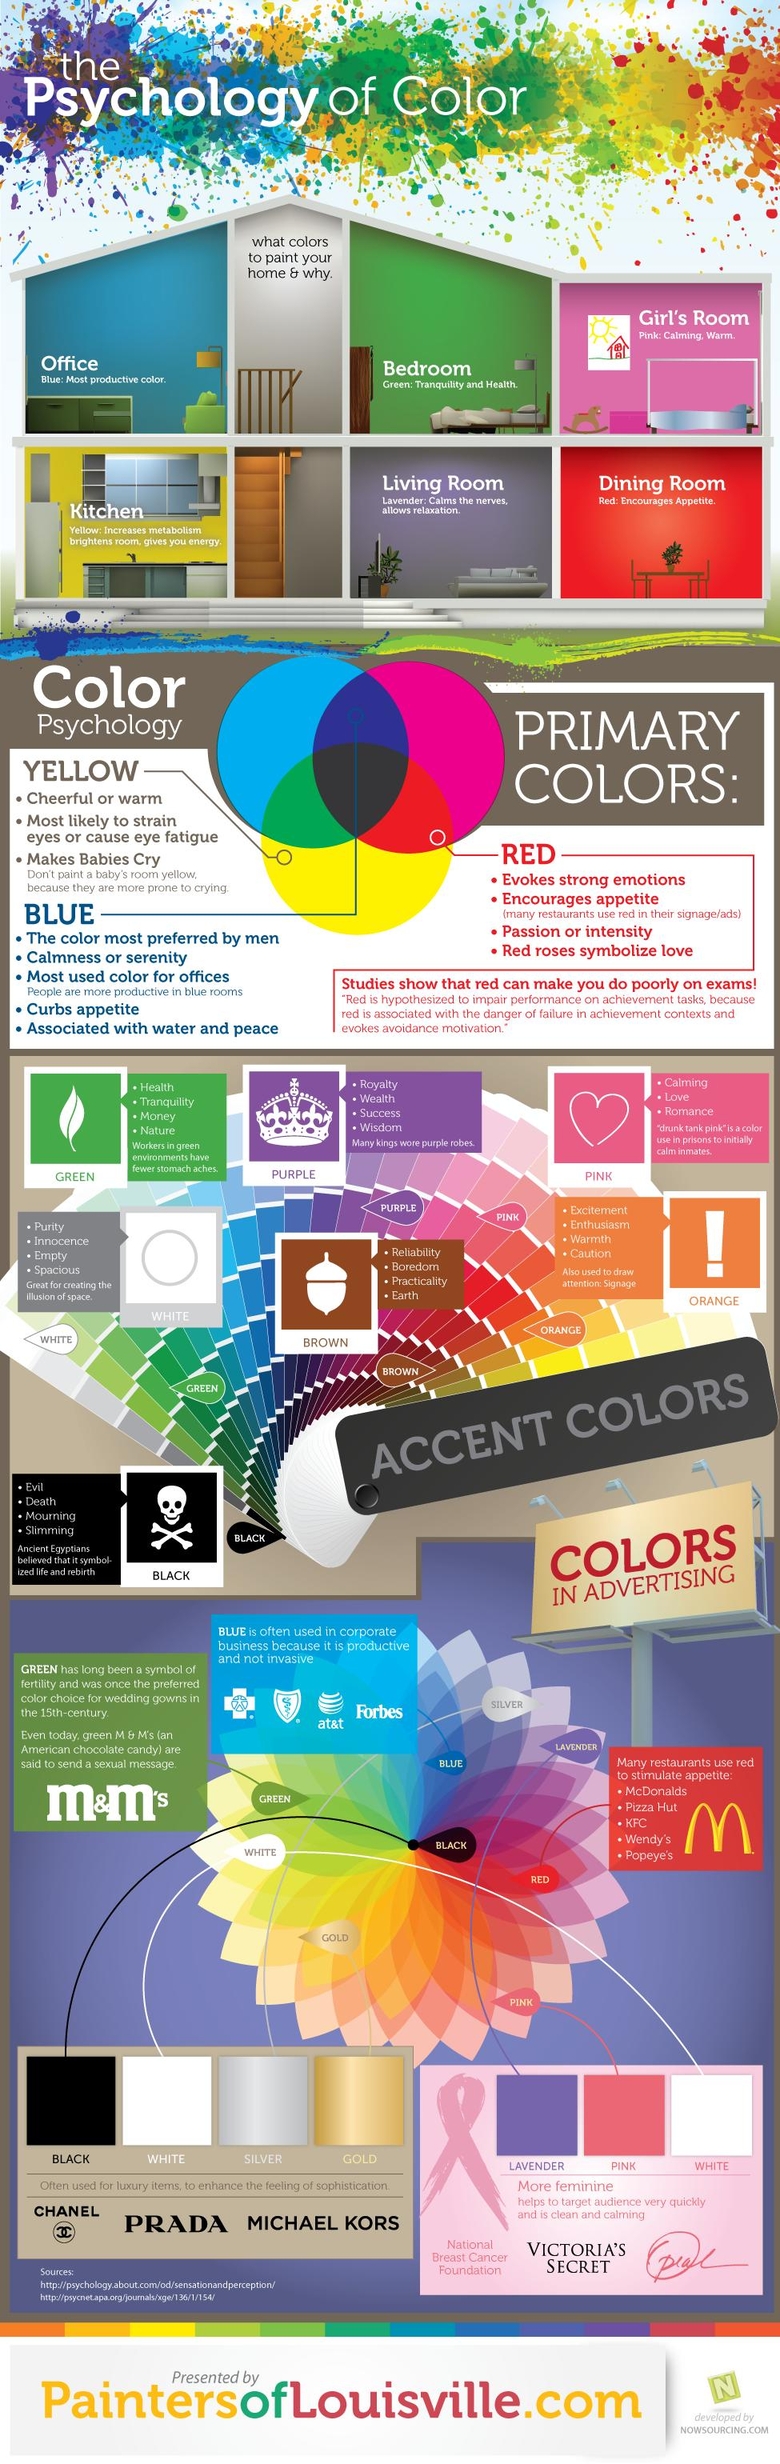 Färger och deras betydelse